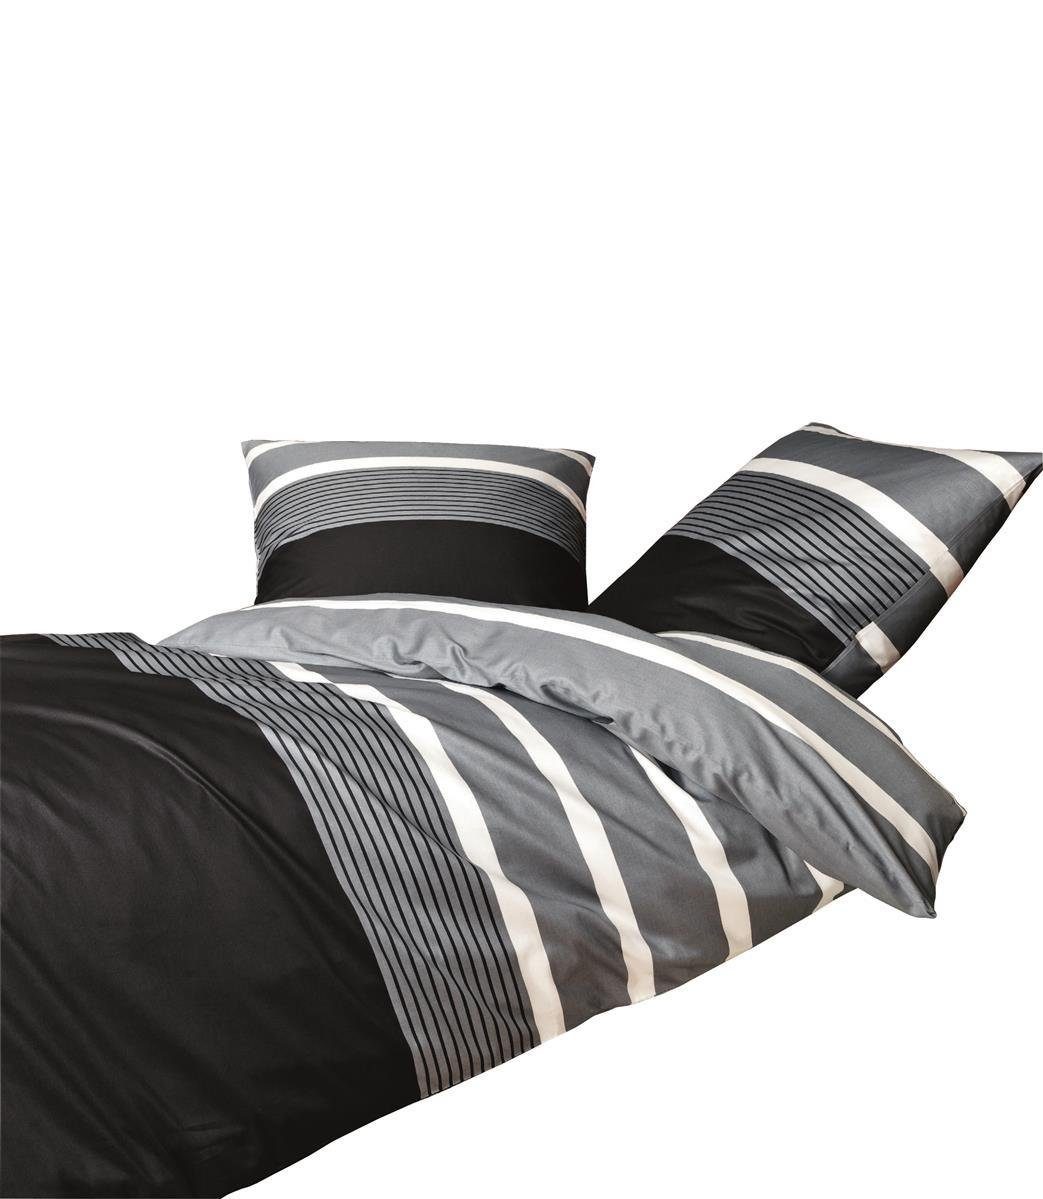 Bettwäsche Mako Satin 135x200 cm 80x80 cm Streifen silber-schwarz, Janine,  Baumolle, 4 teilig, Bettbezug Kopfkissenbezug Set kuschelig weich hochwertig